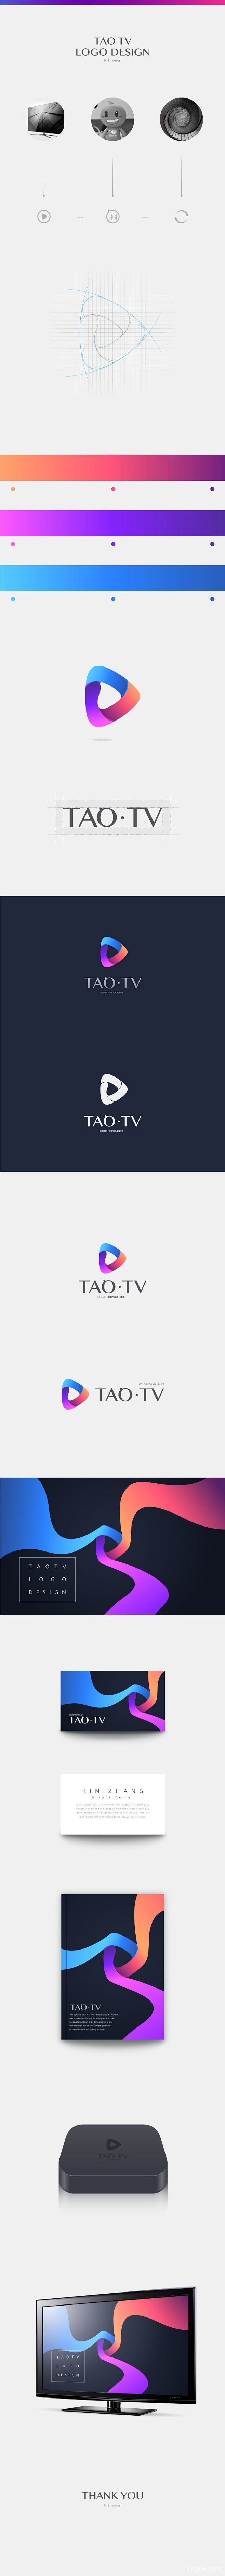 TAO TV LOGO标志设计 - 图翼...